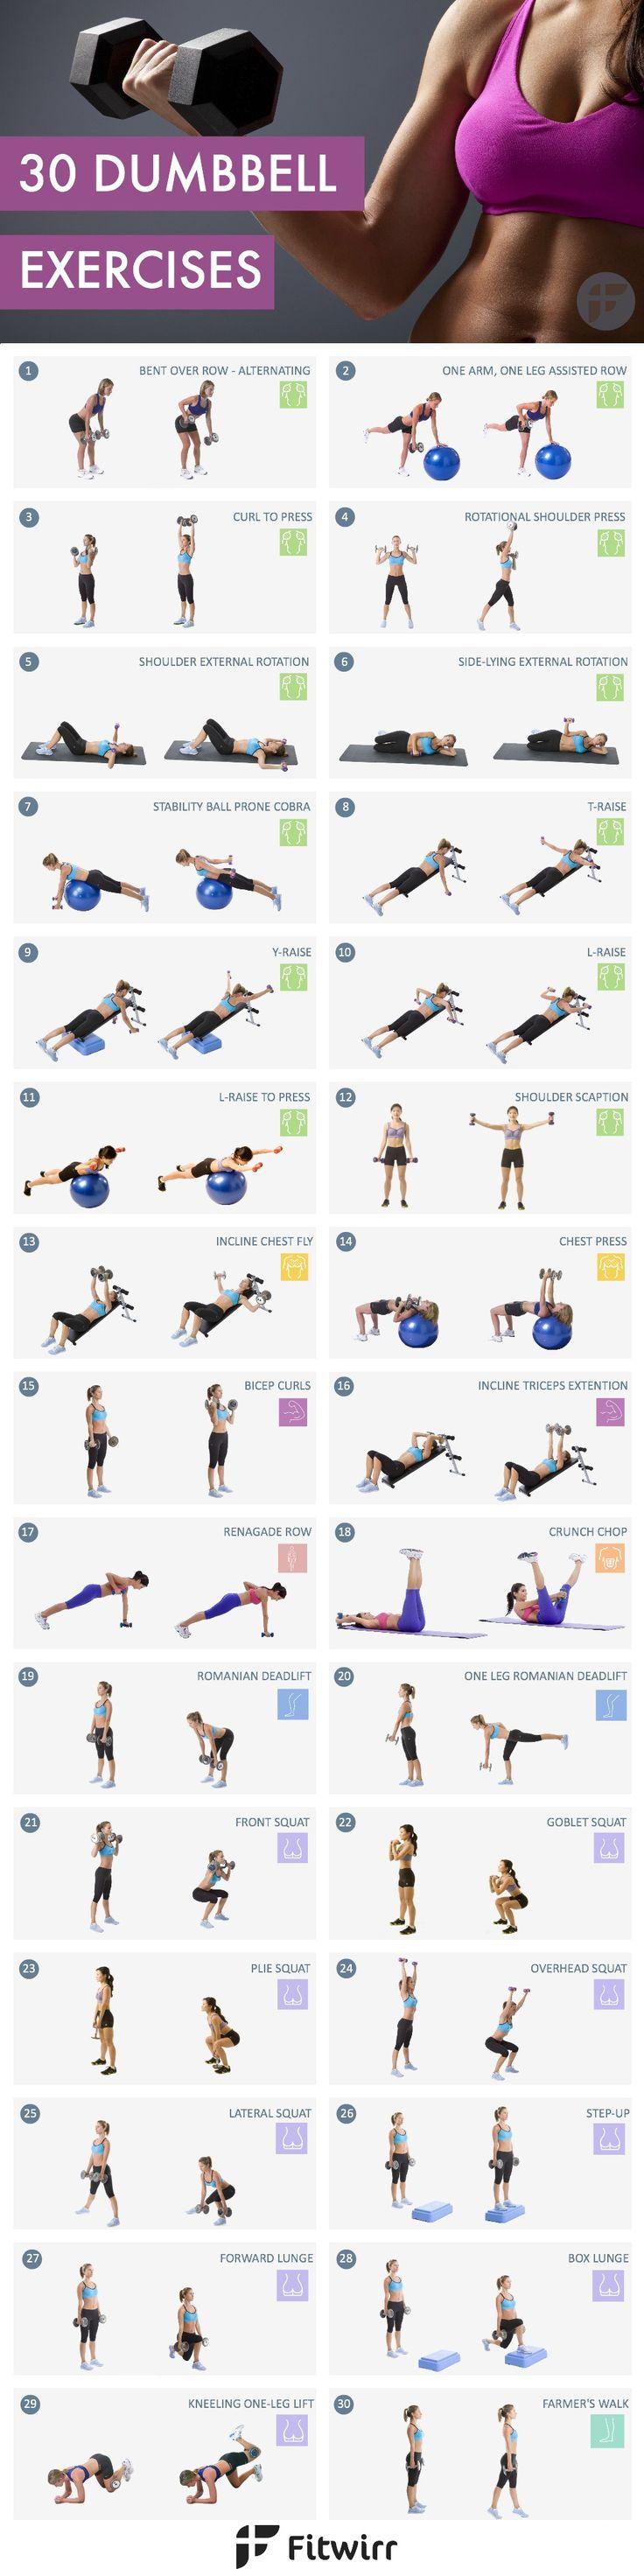 زفاف - Home Workouts: 30 Dumbbell Exercises For Women [Image List]